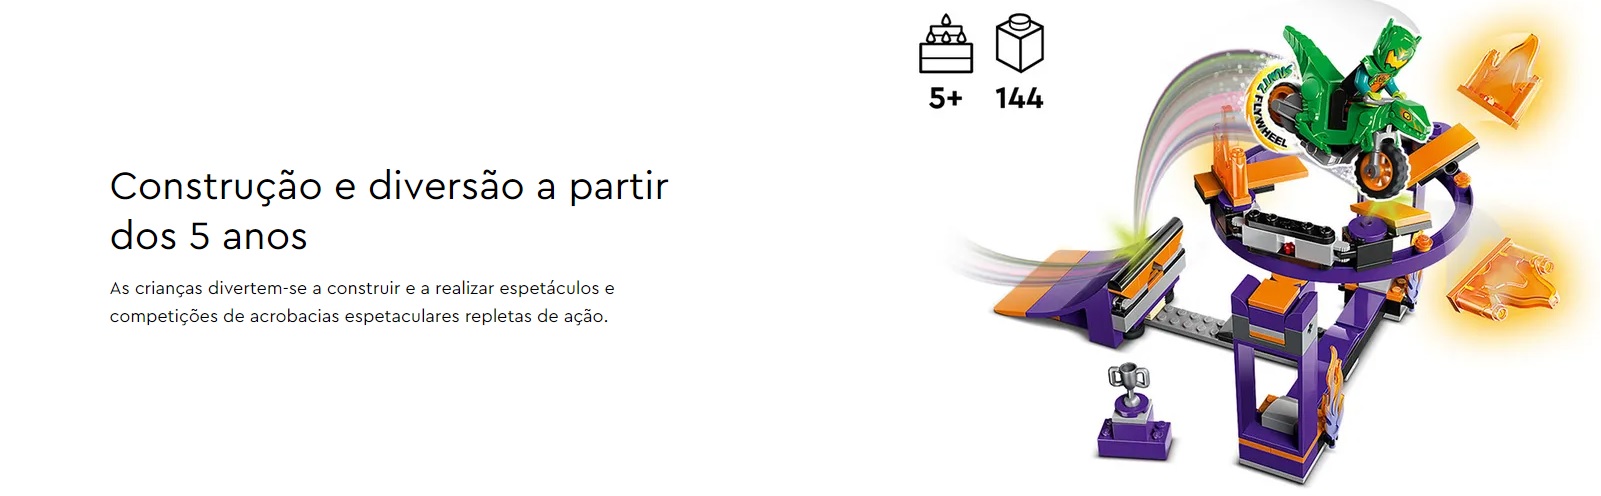 LEGO CITY - Desafio Acrobático da Rampa de Afundanço - 60359